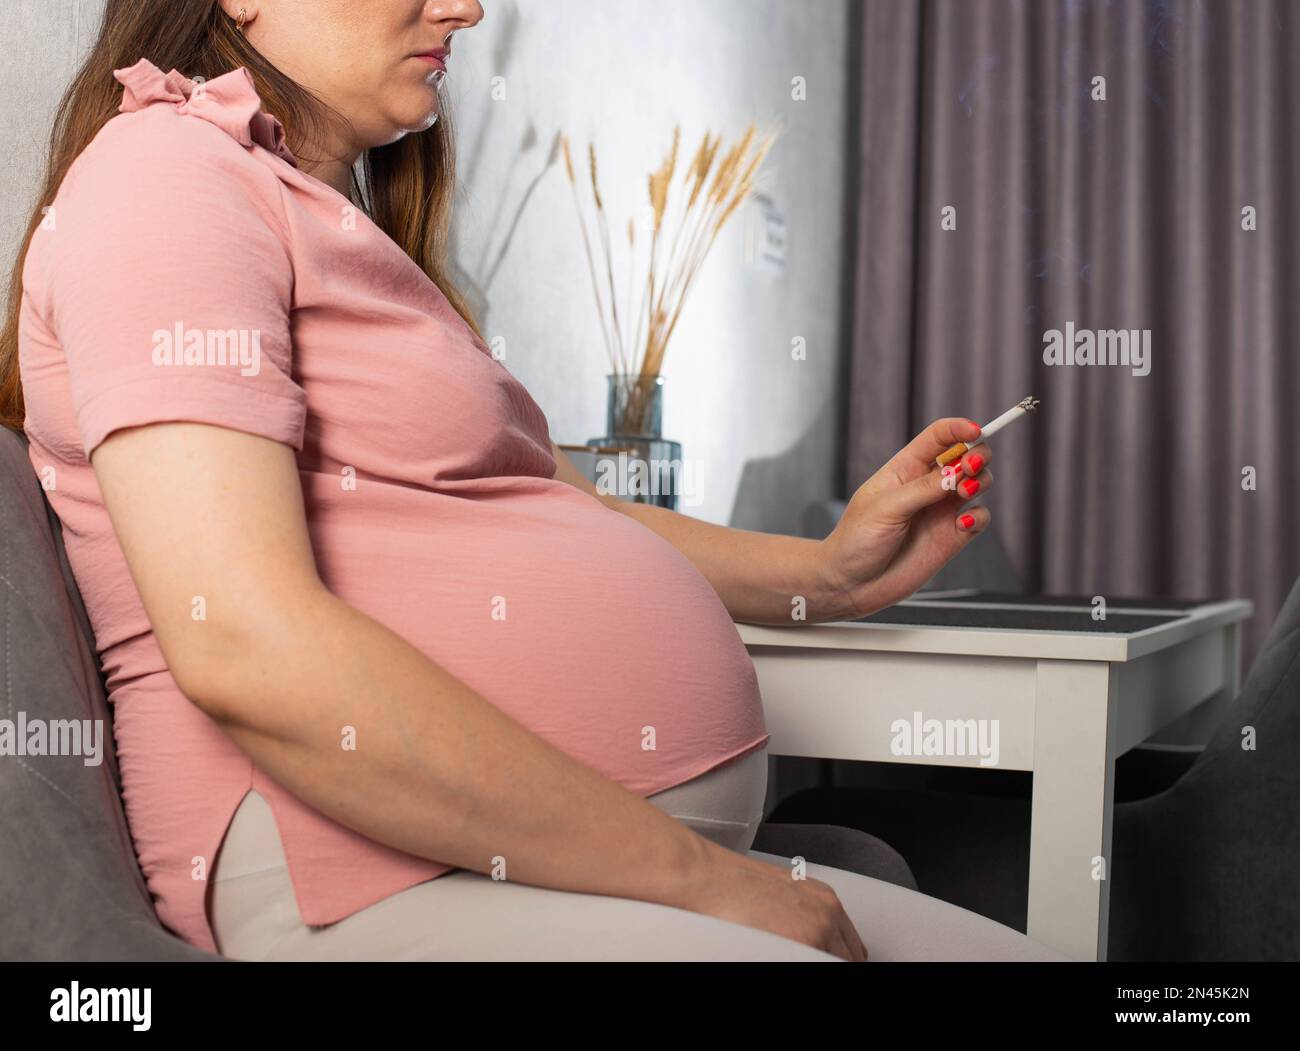 Una ragazza incinta con una grande pancia siede in cucina al tavolo e fuma. Fumo e gravidanza. Danno alla salute del bambino e della madre, tobac Foto Stock